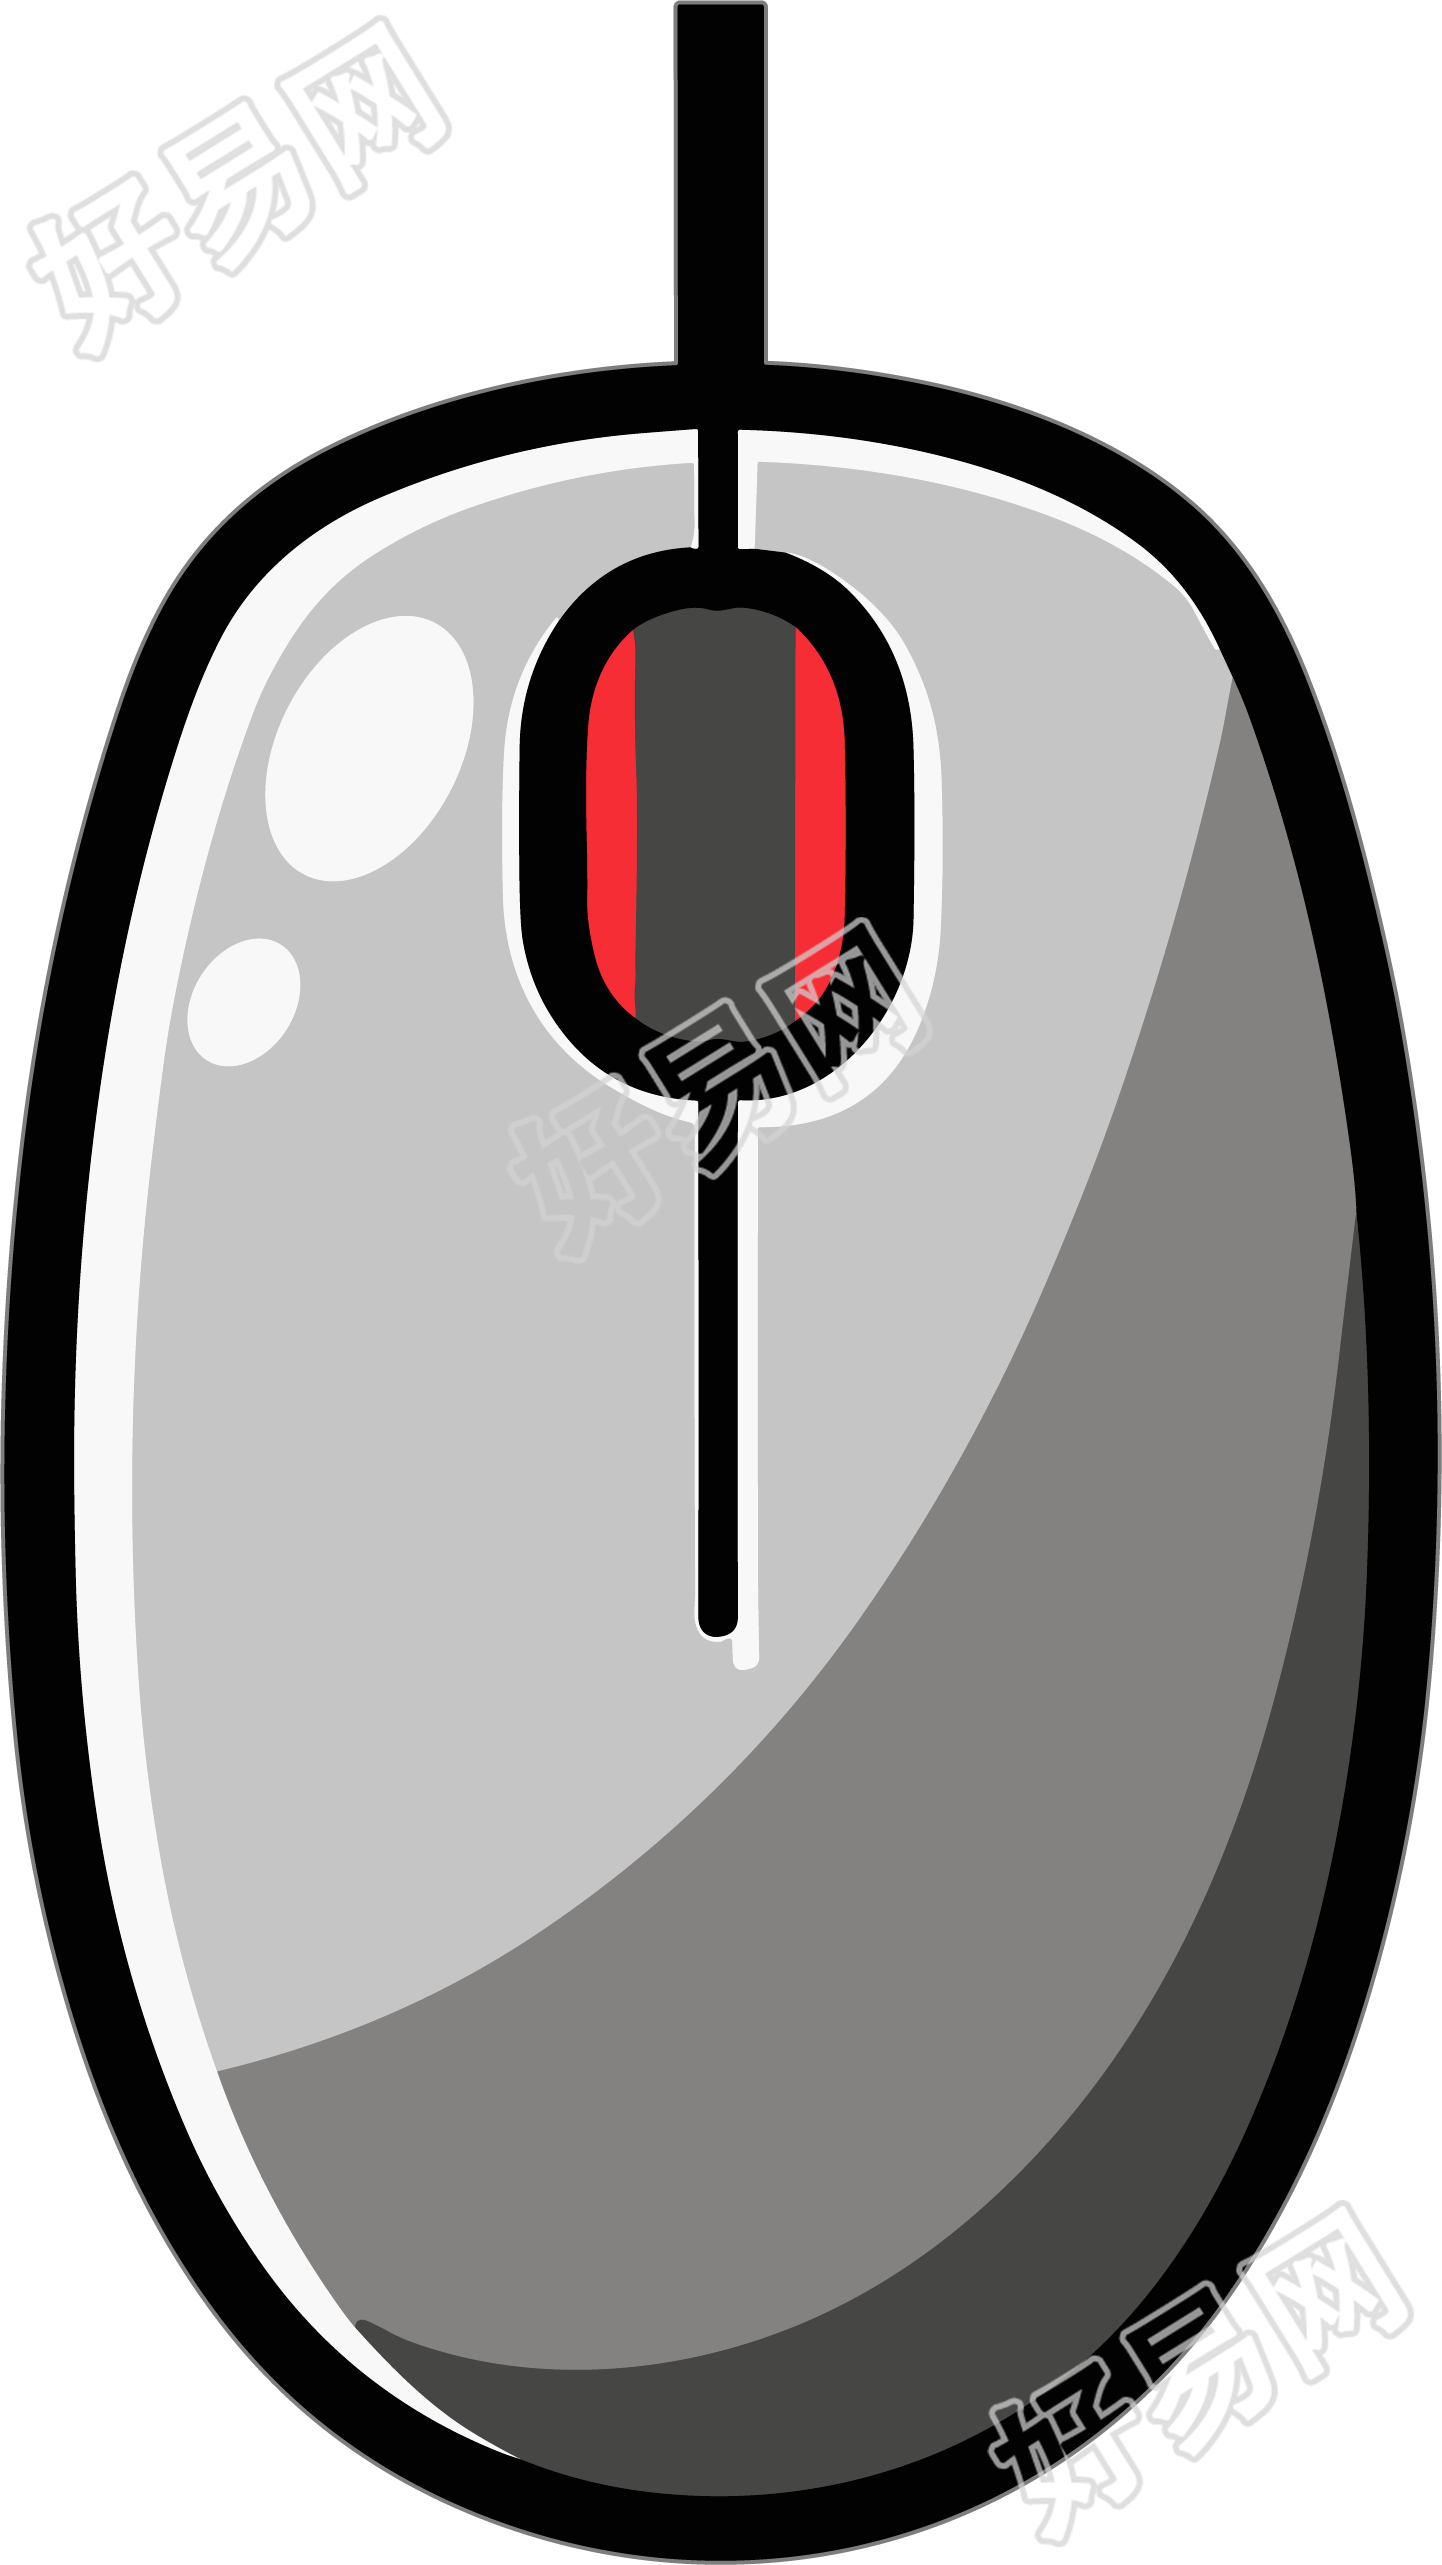 鼠标logo设计元素素材